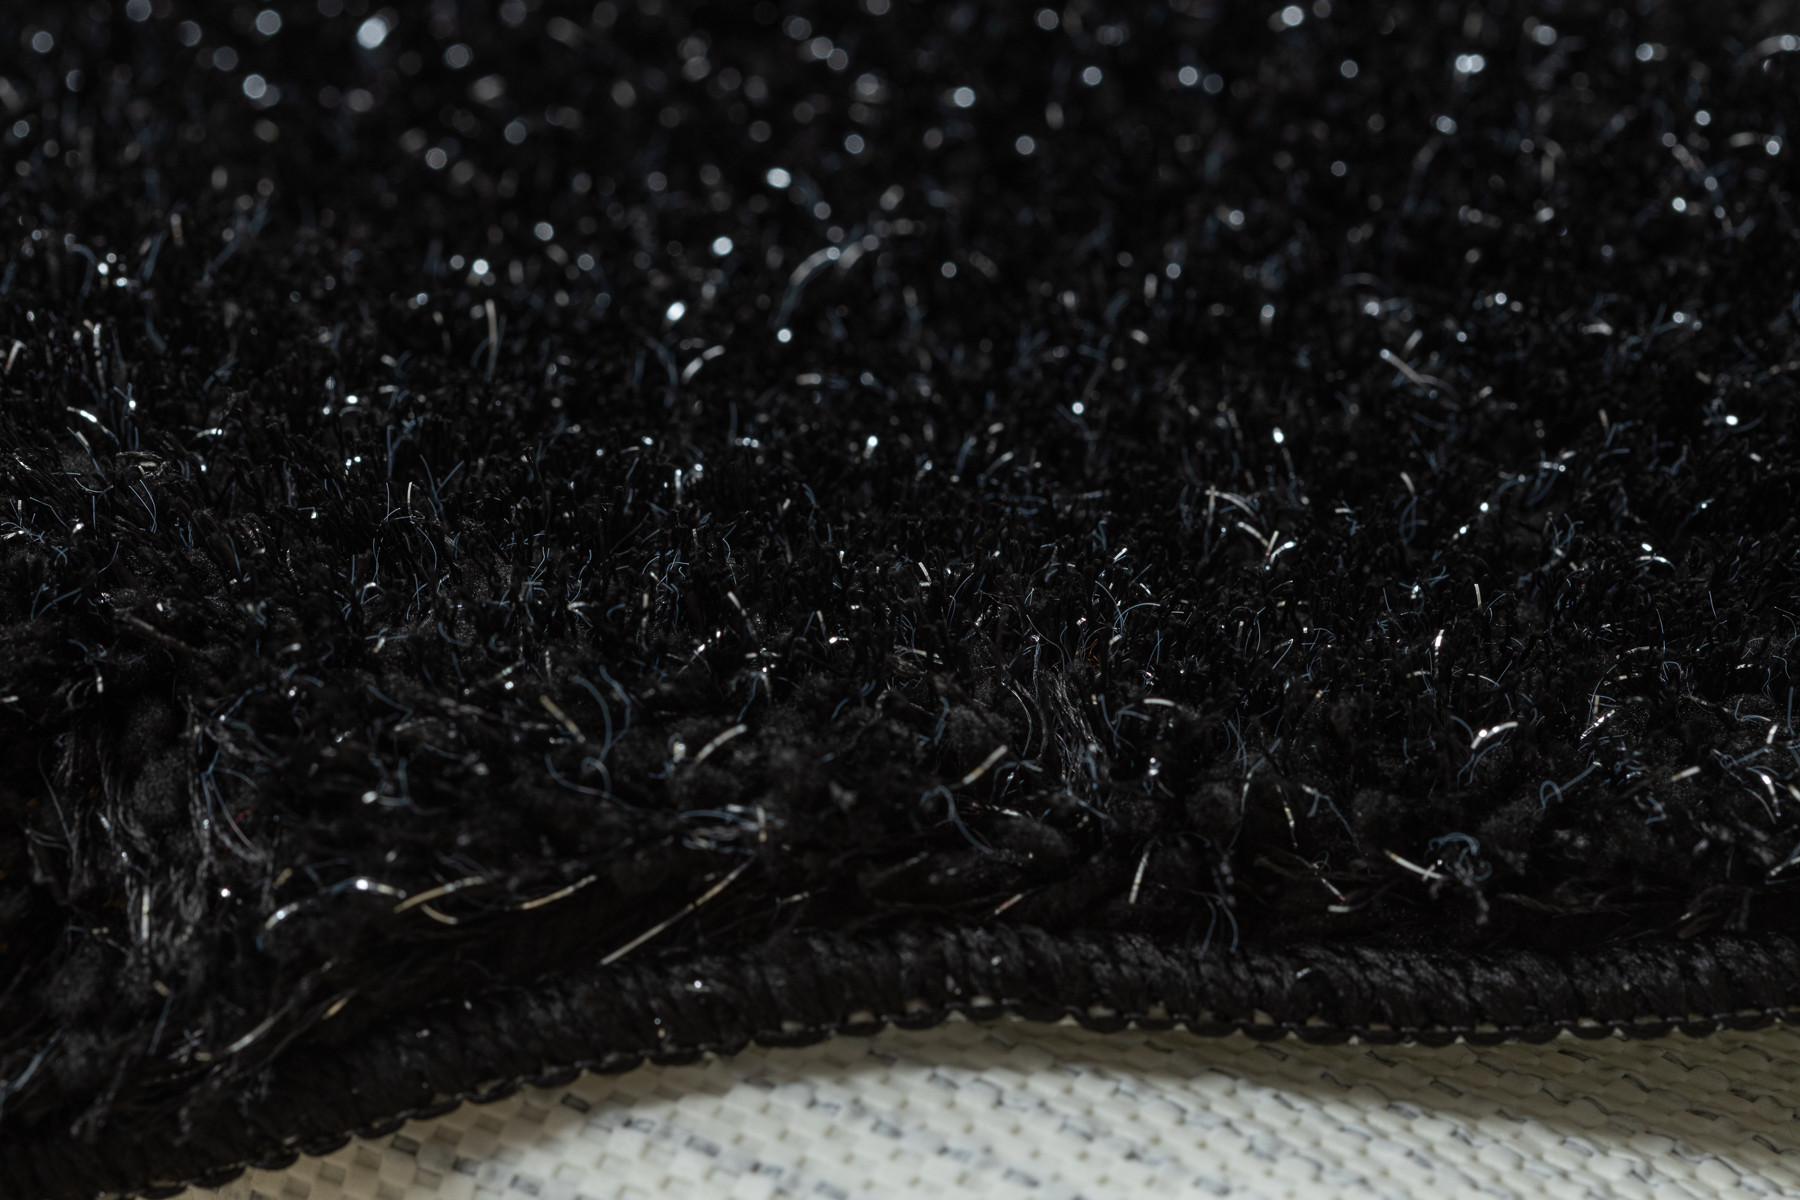 Koupelnový kobereček SYNERGY glamour / lurex, černý